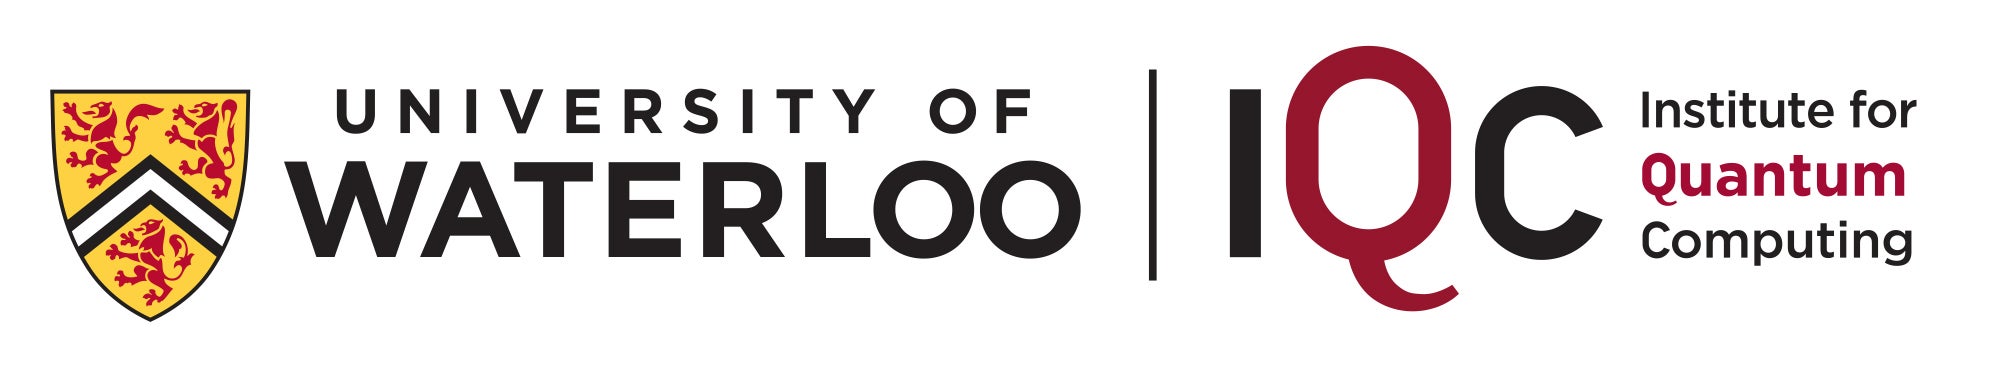 UW IQC Logo